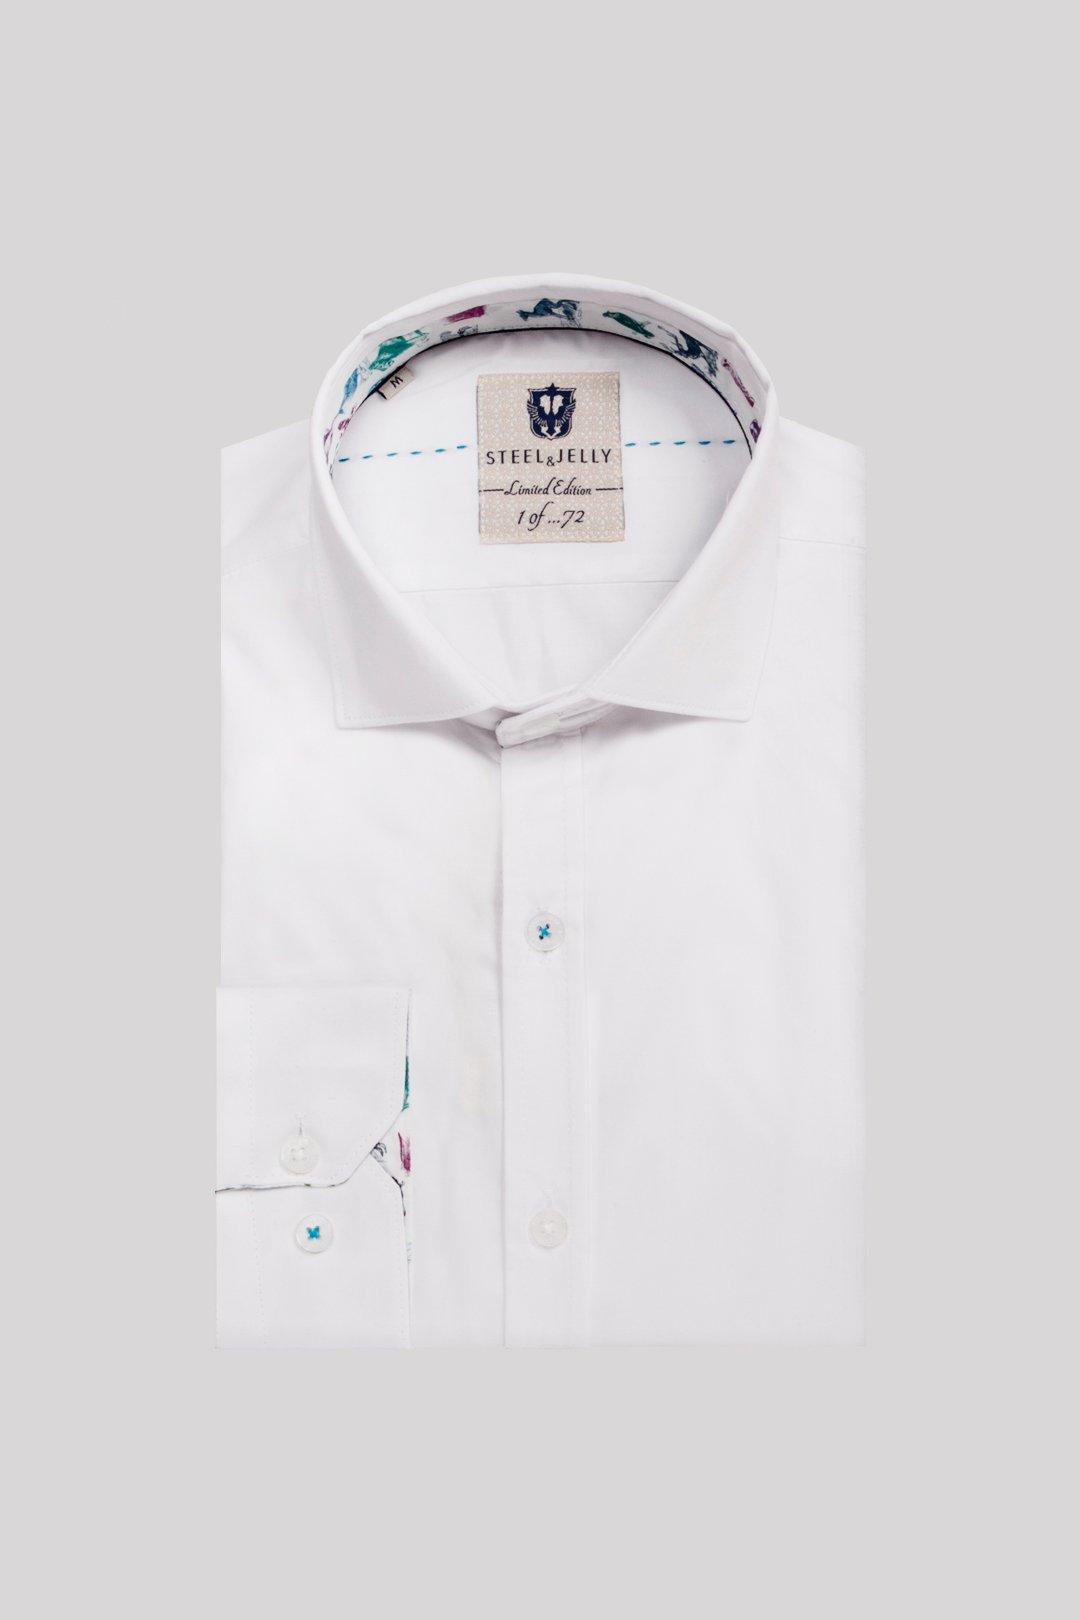 цена Рубашка с длинным рукавом и контрастной отделкой, ограниченная серия Steel & Jelly, белый